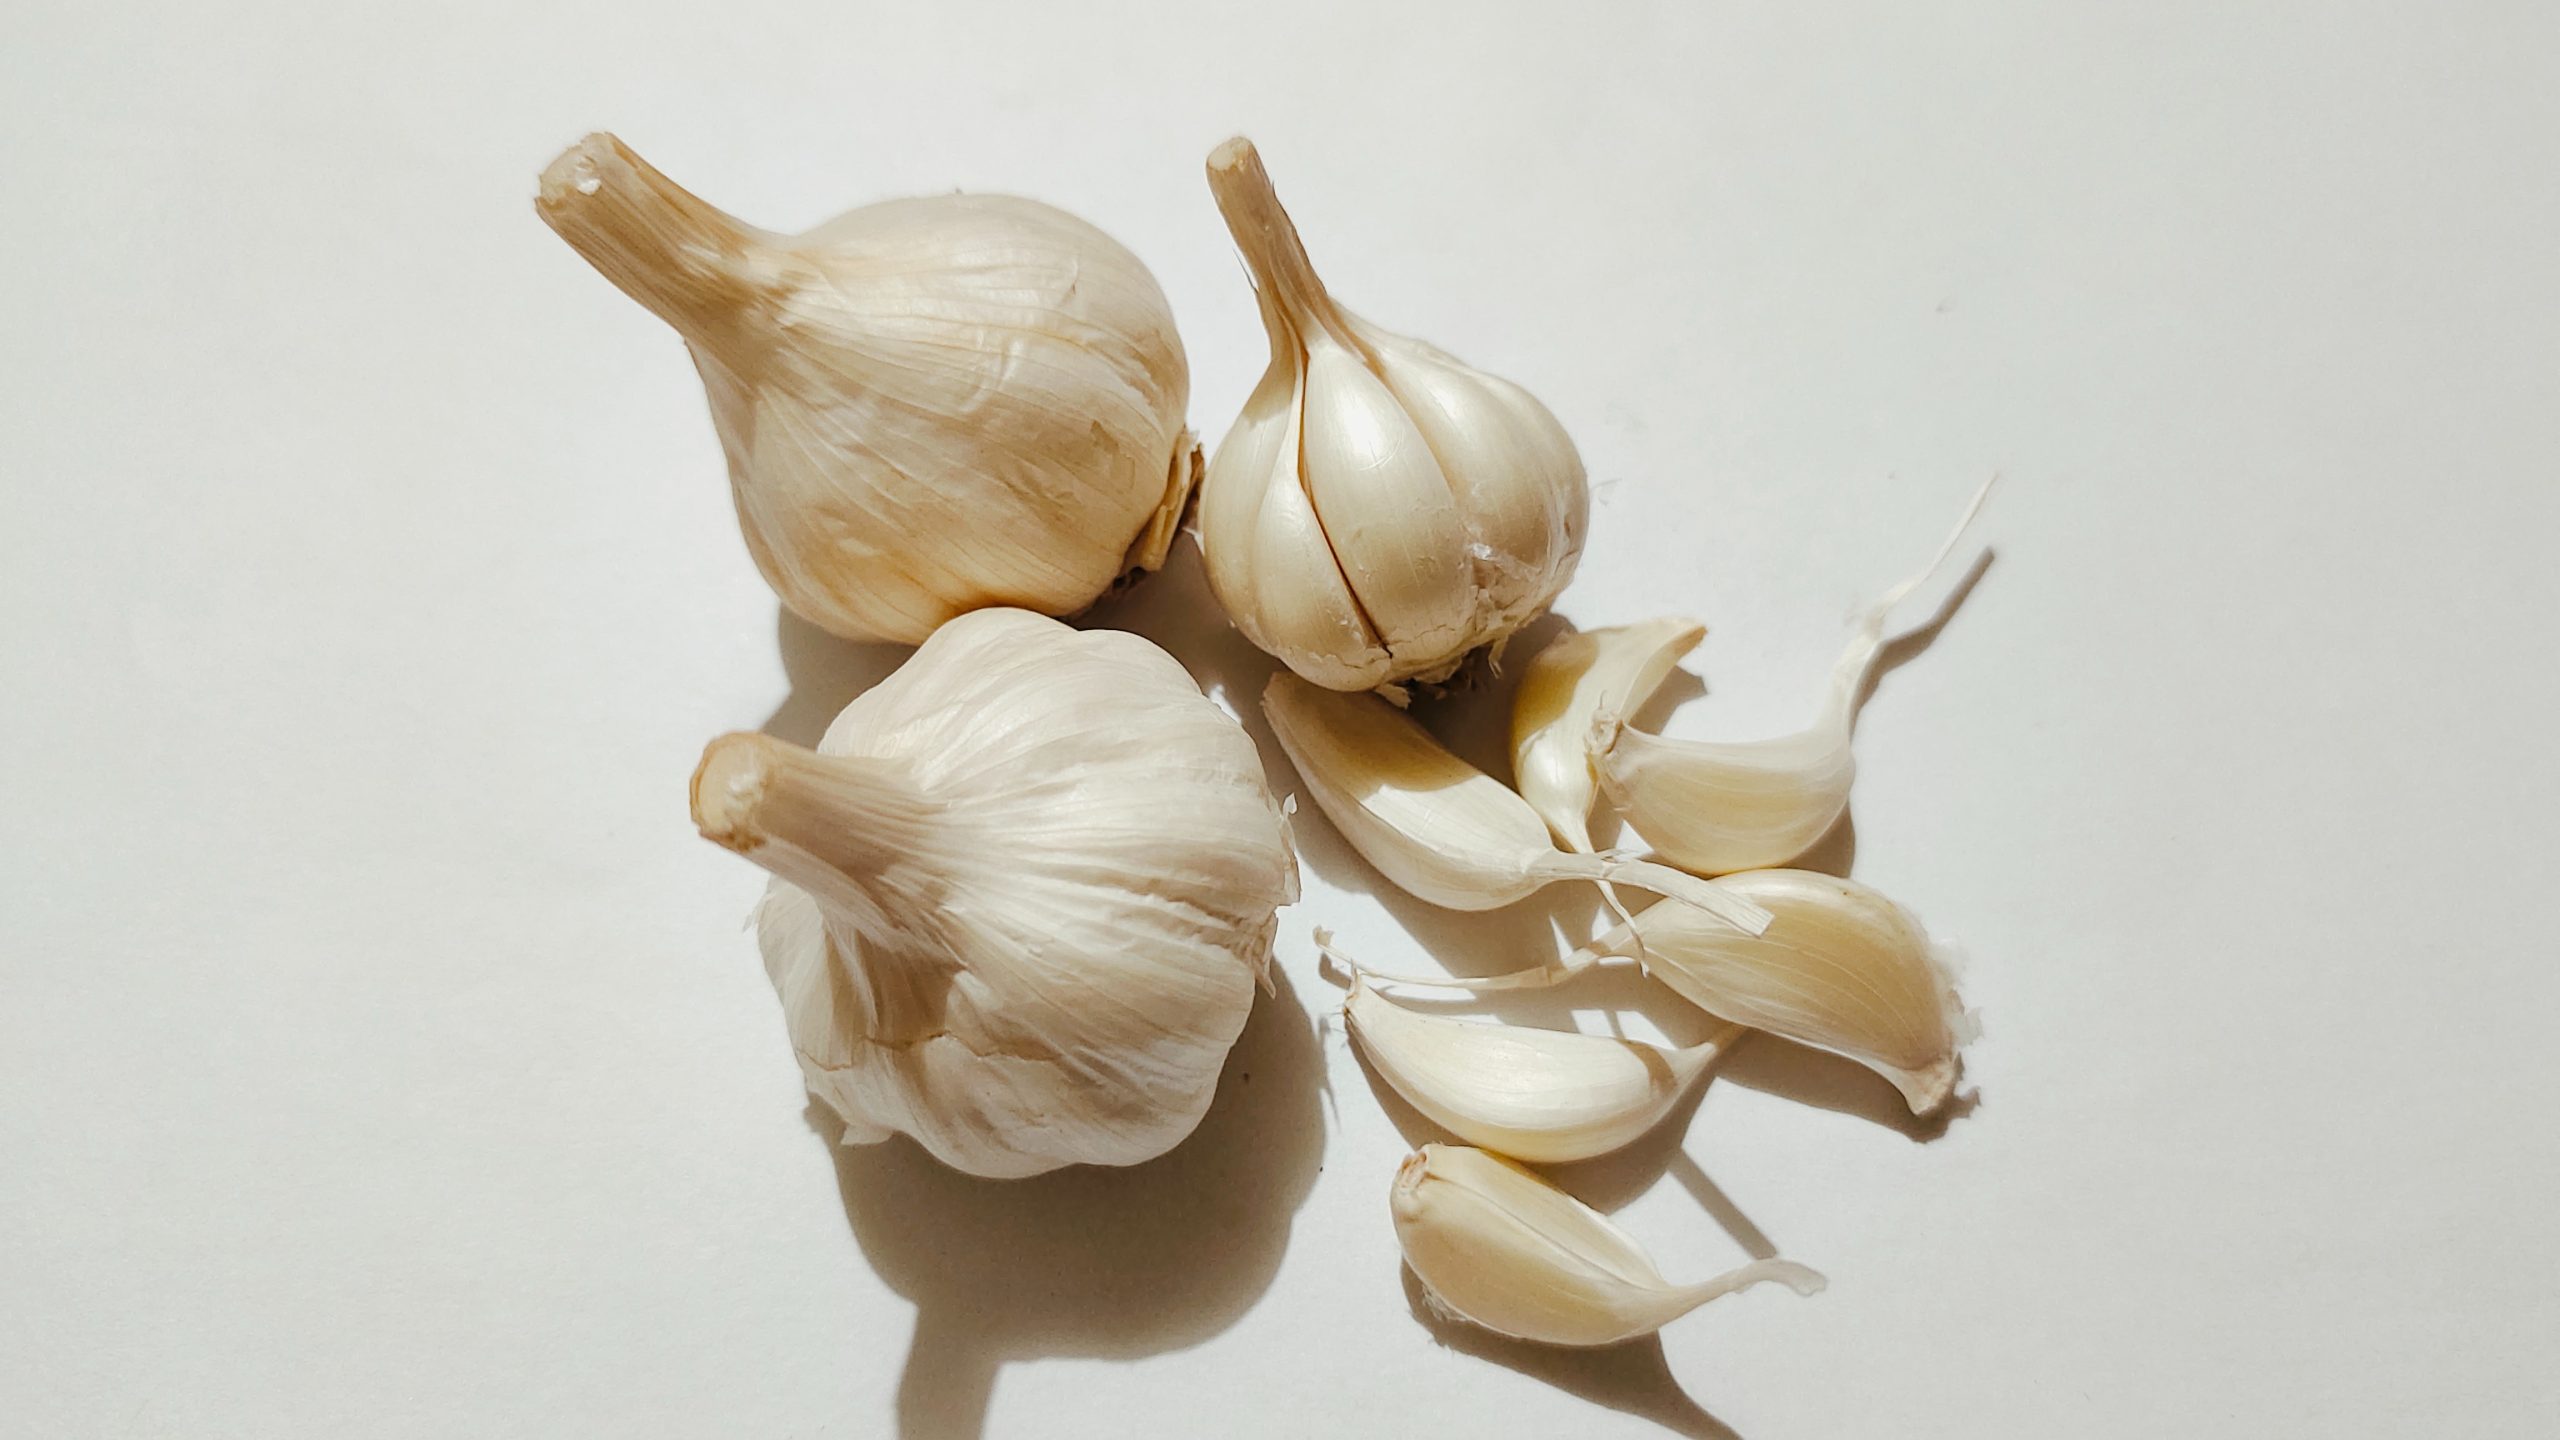 蒜頭 (Garlic) 的功效